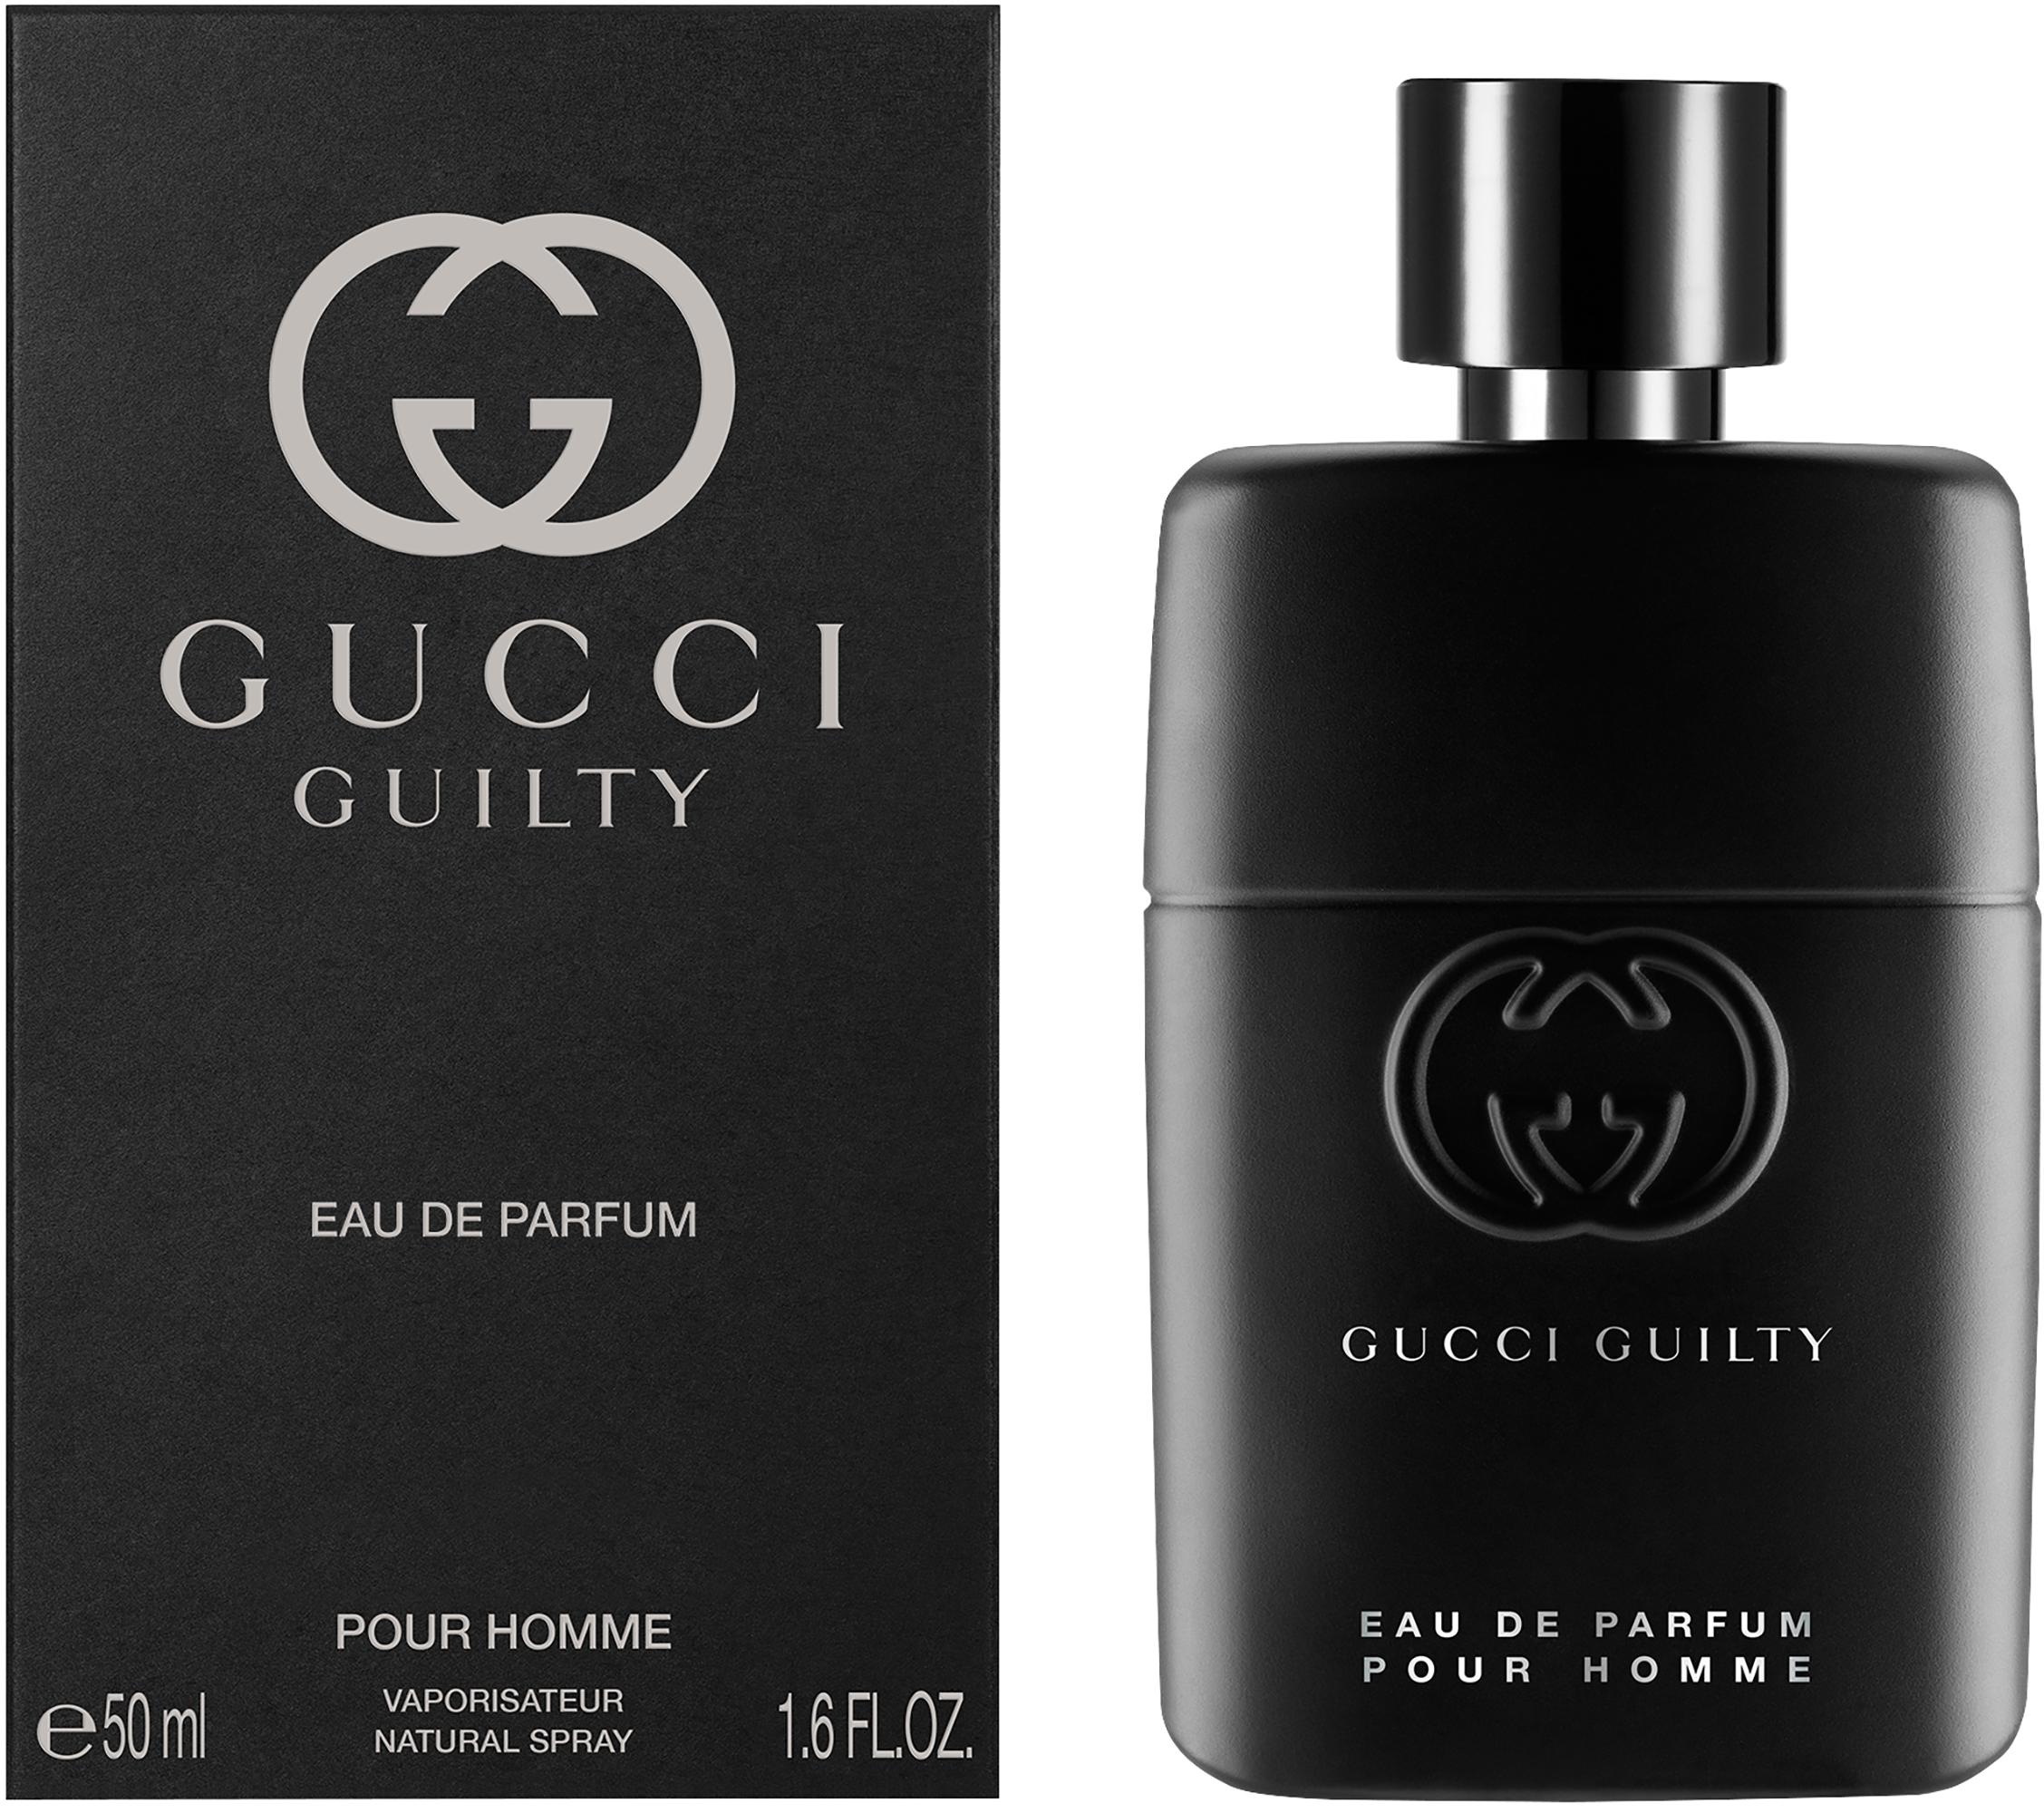 Gucci Guilty Pour Homme Eau ml 50 Parfum De